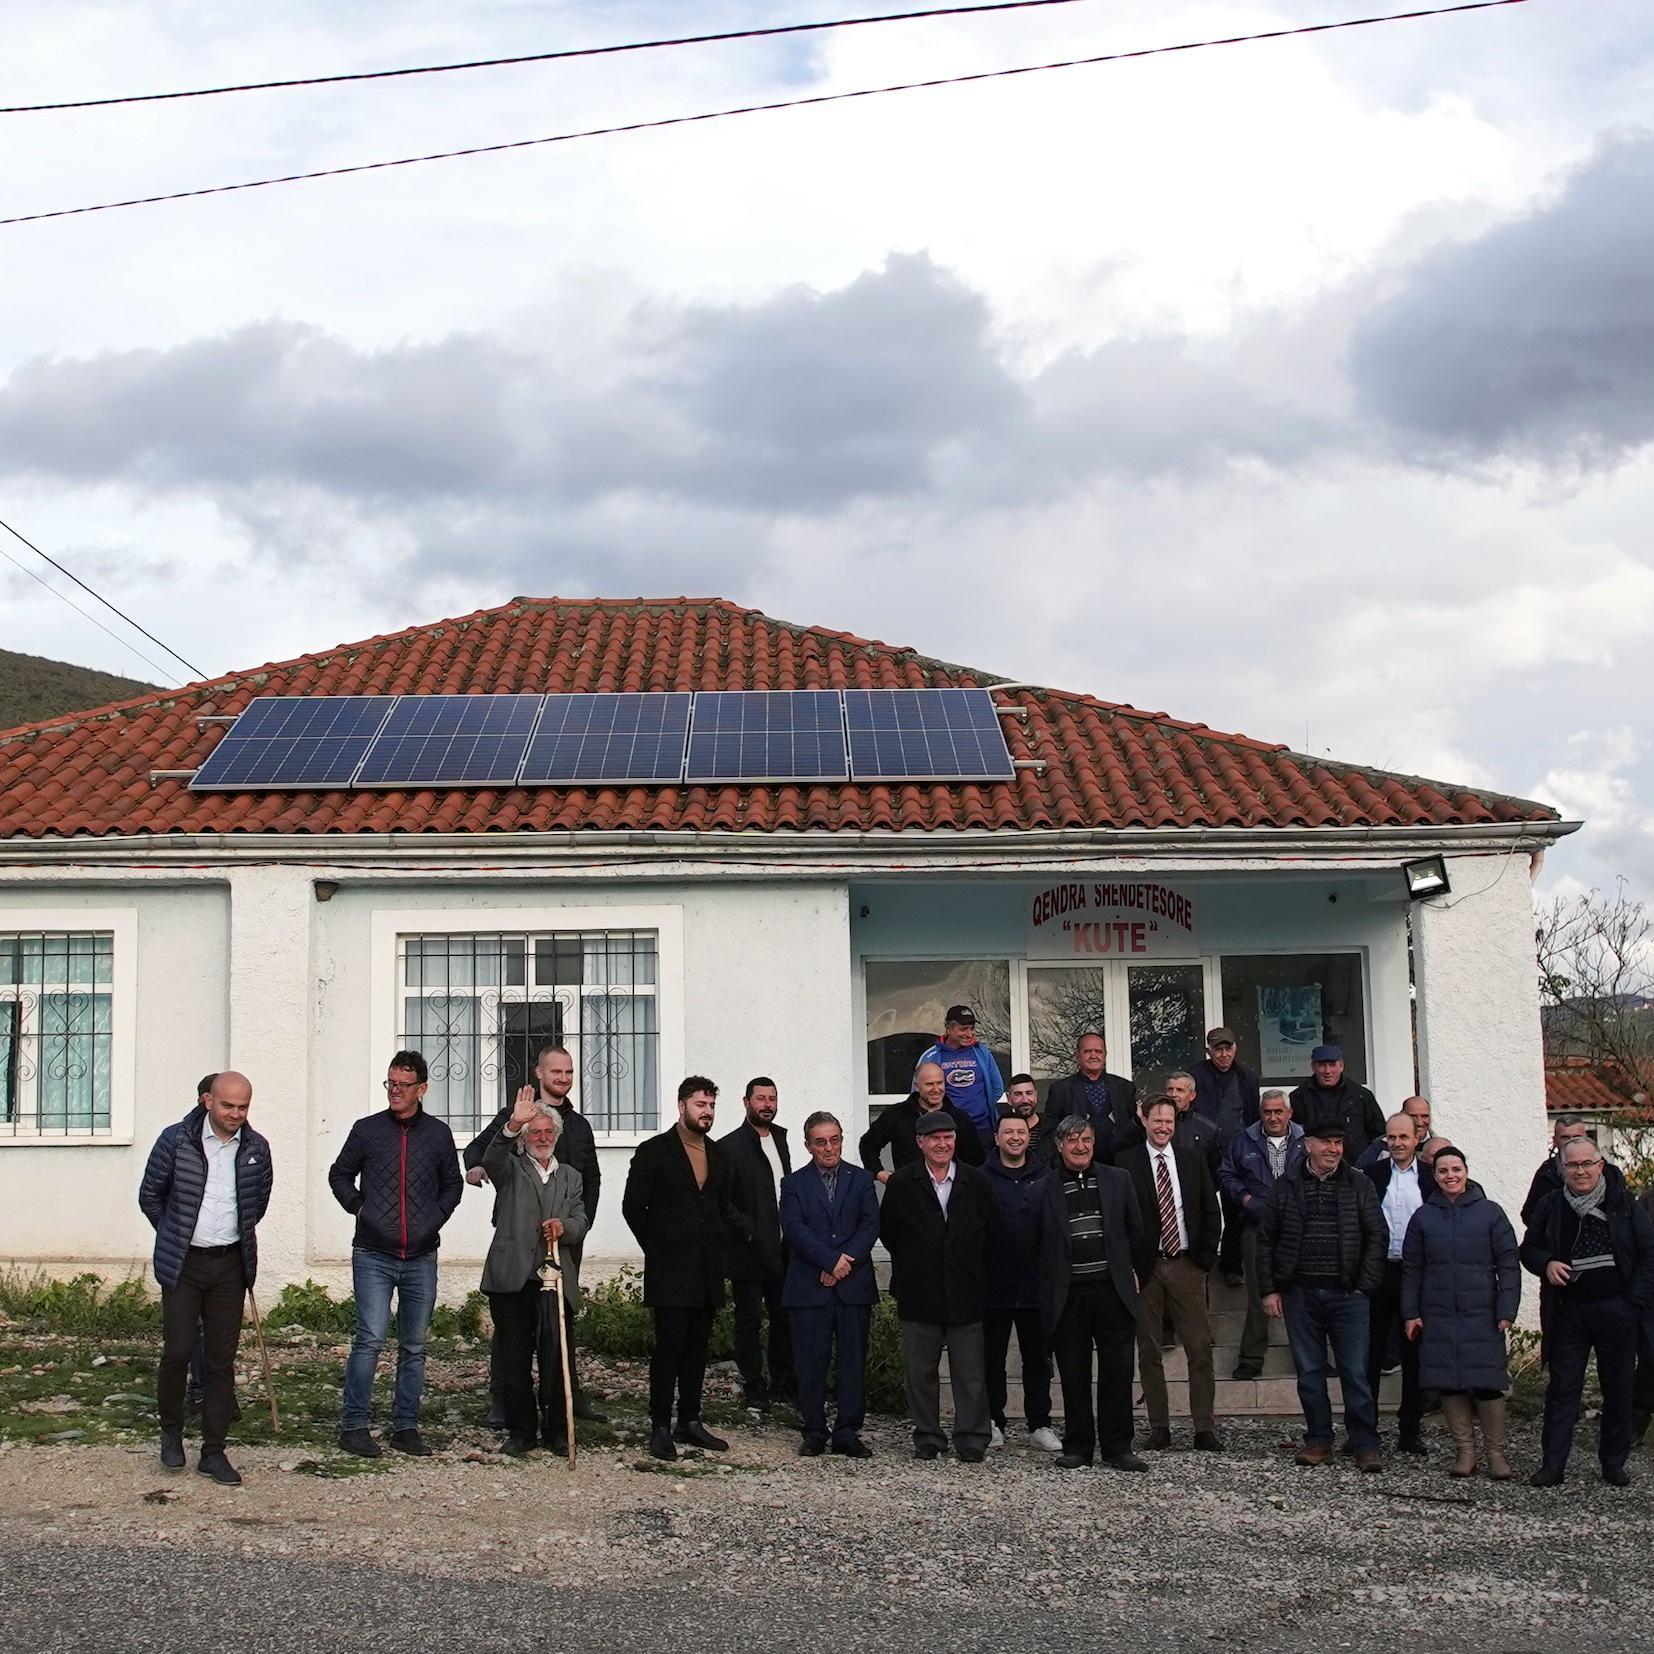 Solar roof in Kutë in Albania